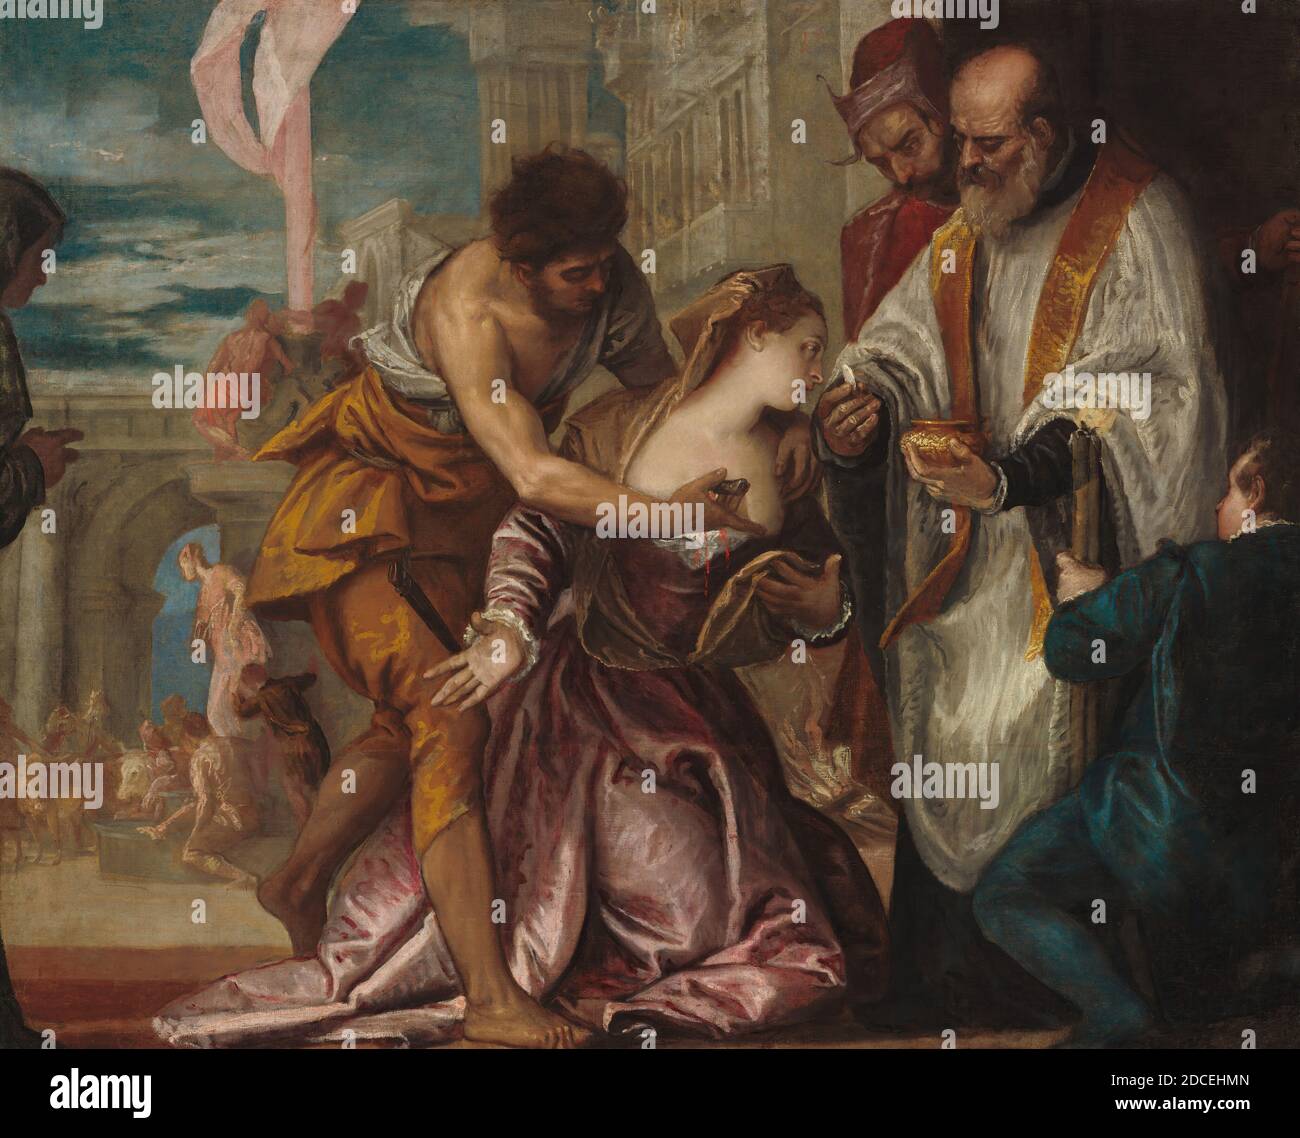 Veronese, (Maler), Venetian, 1528 - 1588, das Martyrium und die letzte Kommunion der heiligen Lucy, c. 1585/1586, Öl auf Leinwand, gesamt: 139.7 x 173.4 cm (55 x 68 1/4 Zoll), gerahmt: 189.2 x 222.6 x 7.5 cm (74 1/2 x 87 5/8 x 2 15/16 Zoll Stockfoto